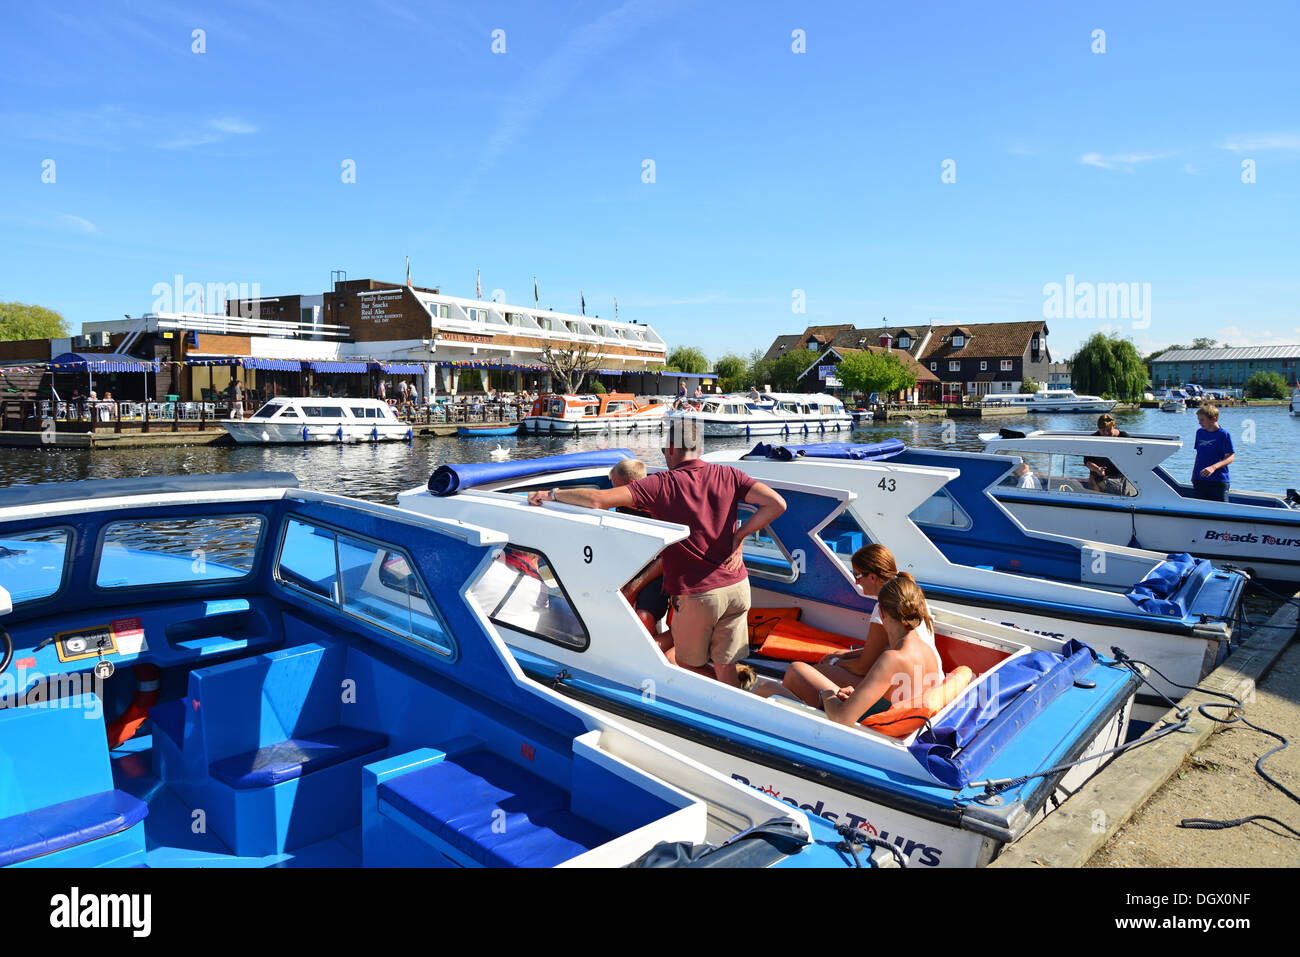 Les bateaux de croisière sur la rivière Bure, Wroxham, Norfolk Broads, Norfolk, Angleterre, Royaume-Uni Banque D'Images